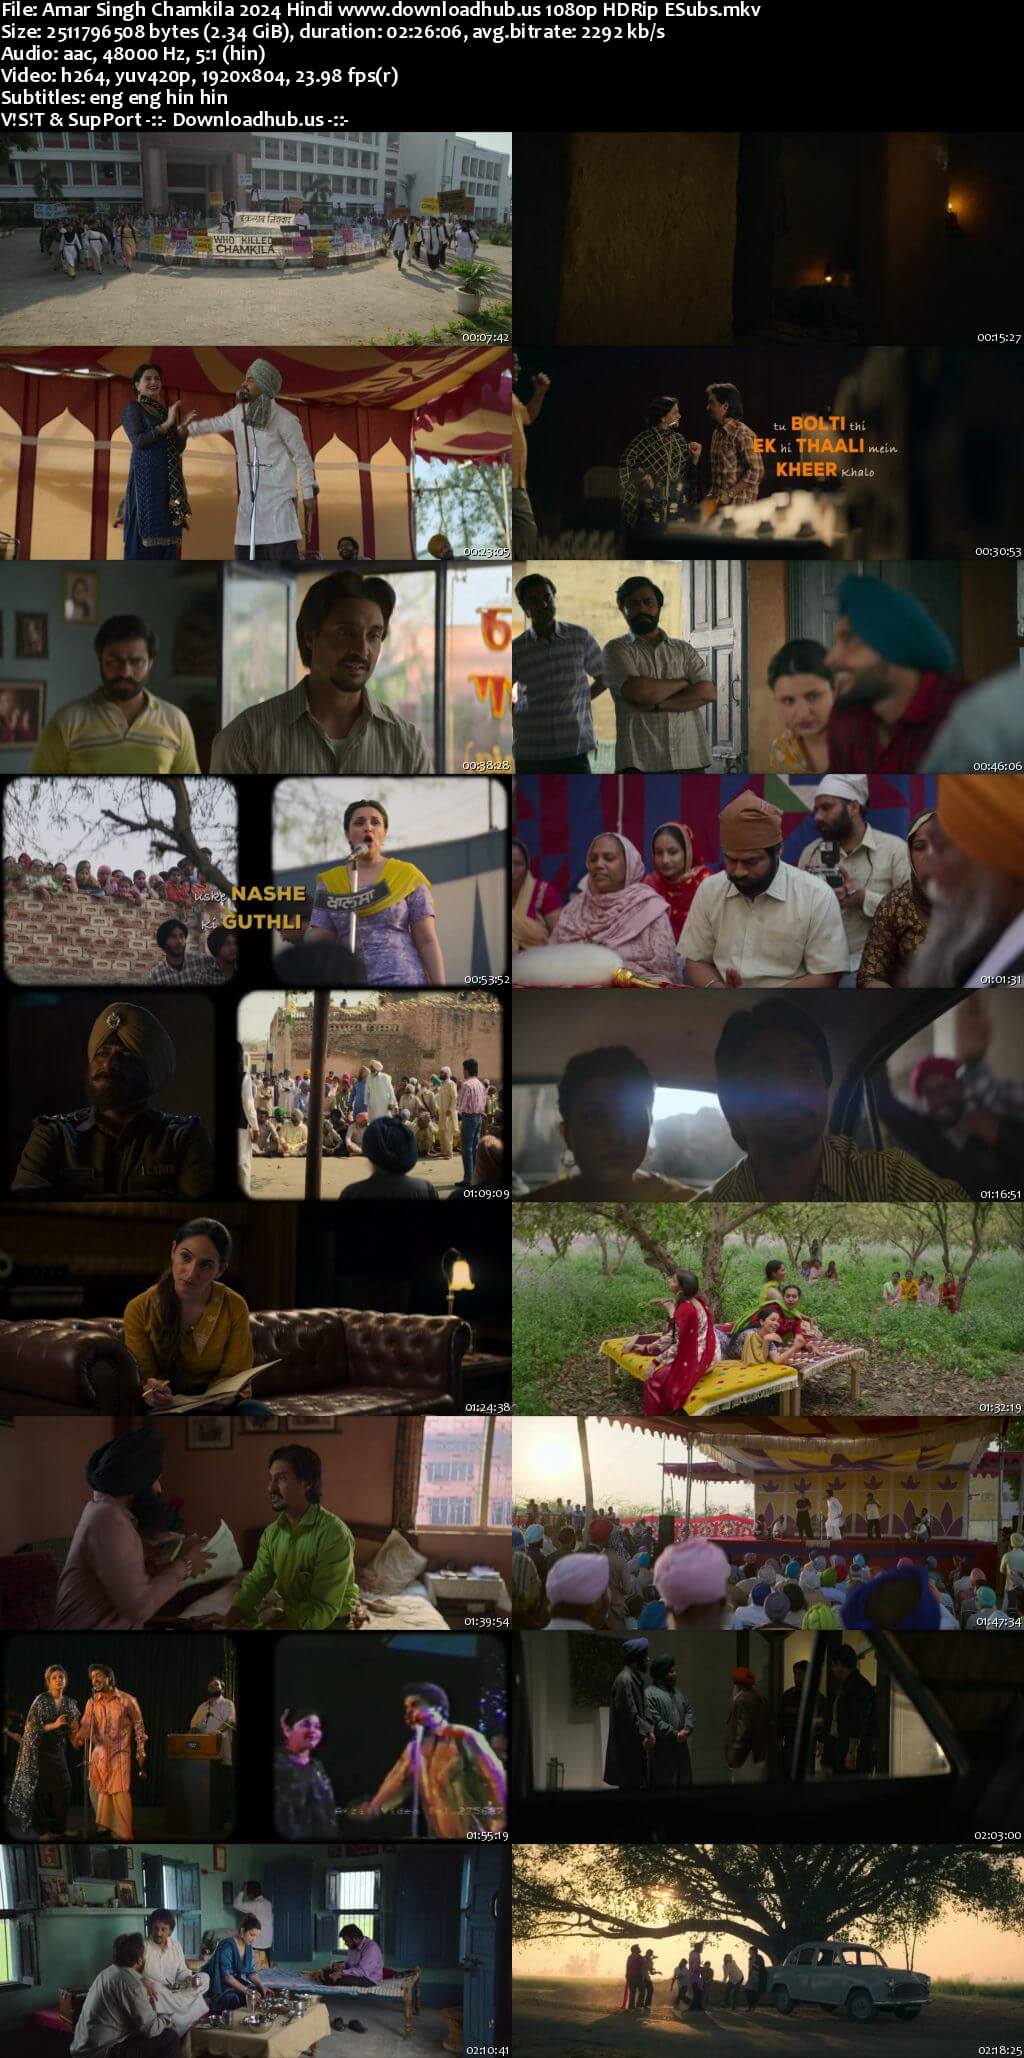 Amar Singh Chamkila 2024 Hindi Movie DD5.1 1080p 720p 480p HDRip ESubs x264 HEVC